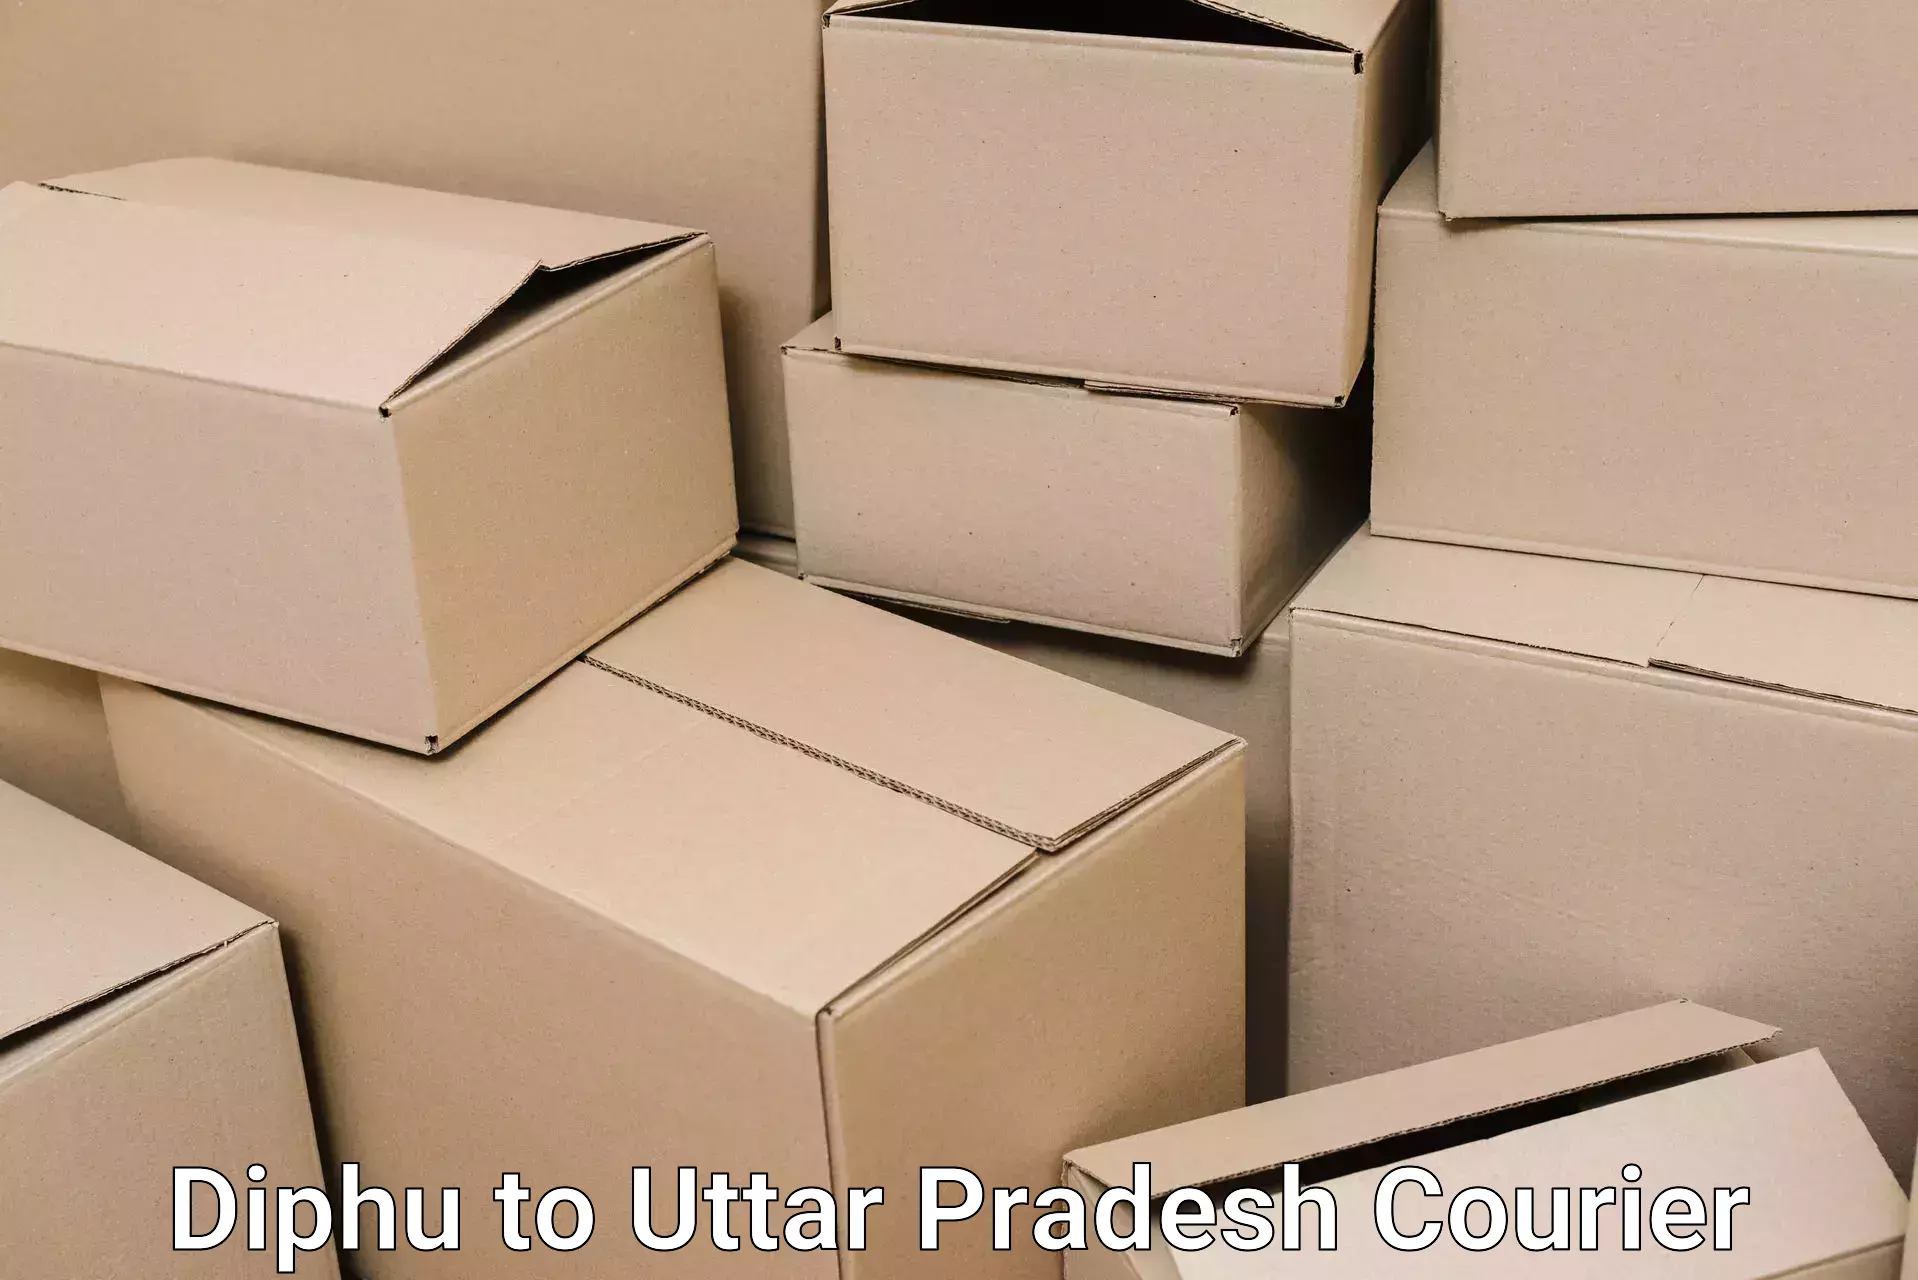 Nationwide furniture transport Diphu to Patti Pratapgarh